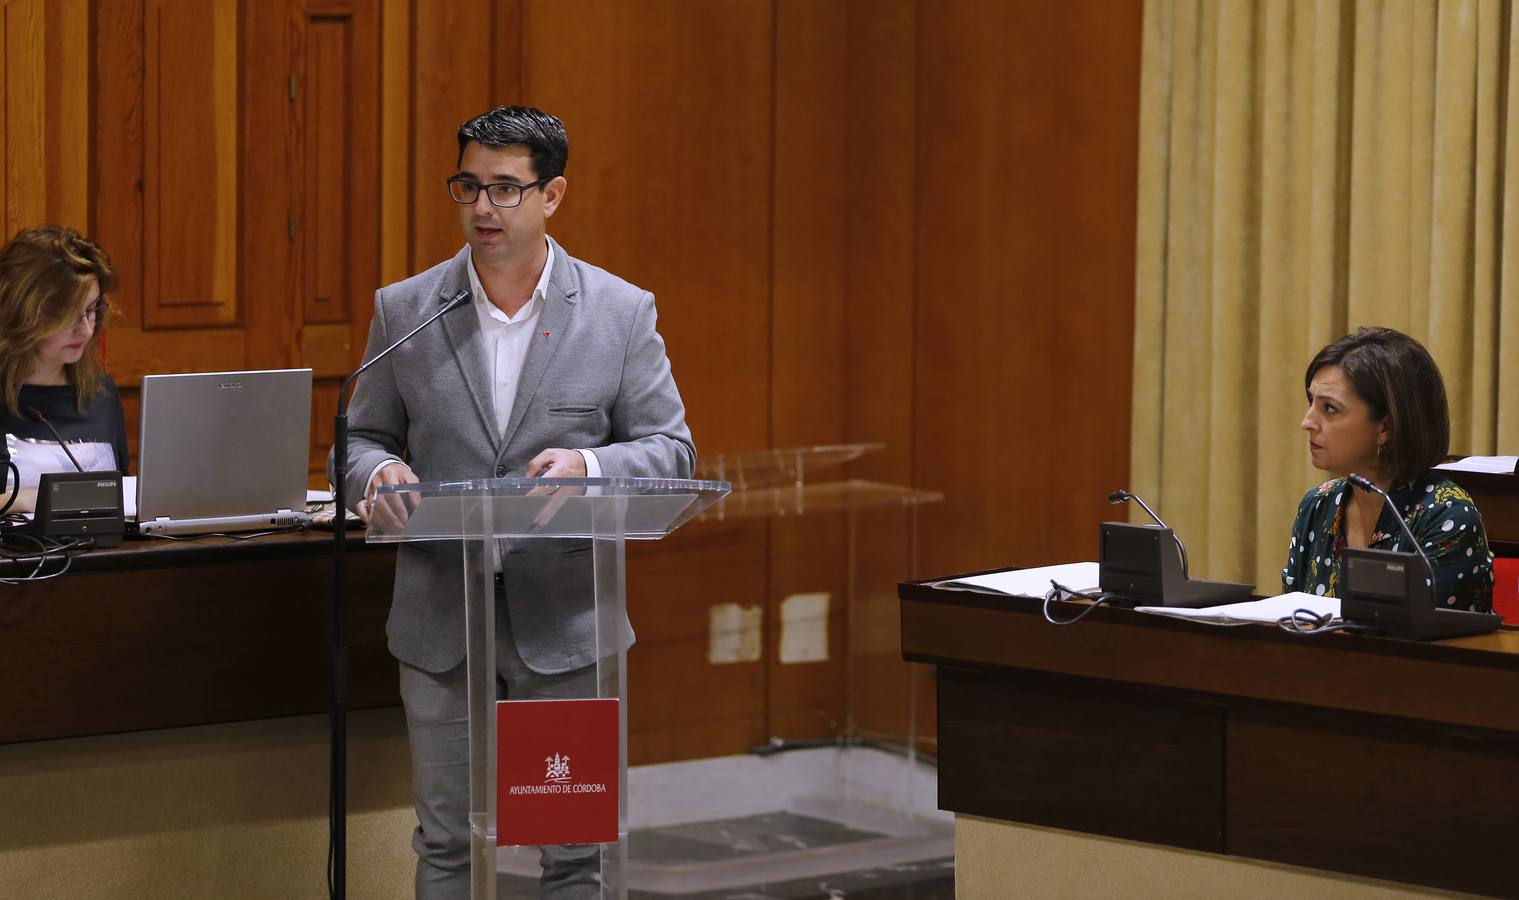 El debate del estado de la ciudad de Córdoba, en imágenes